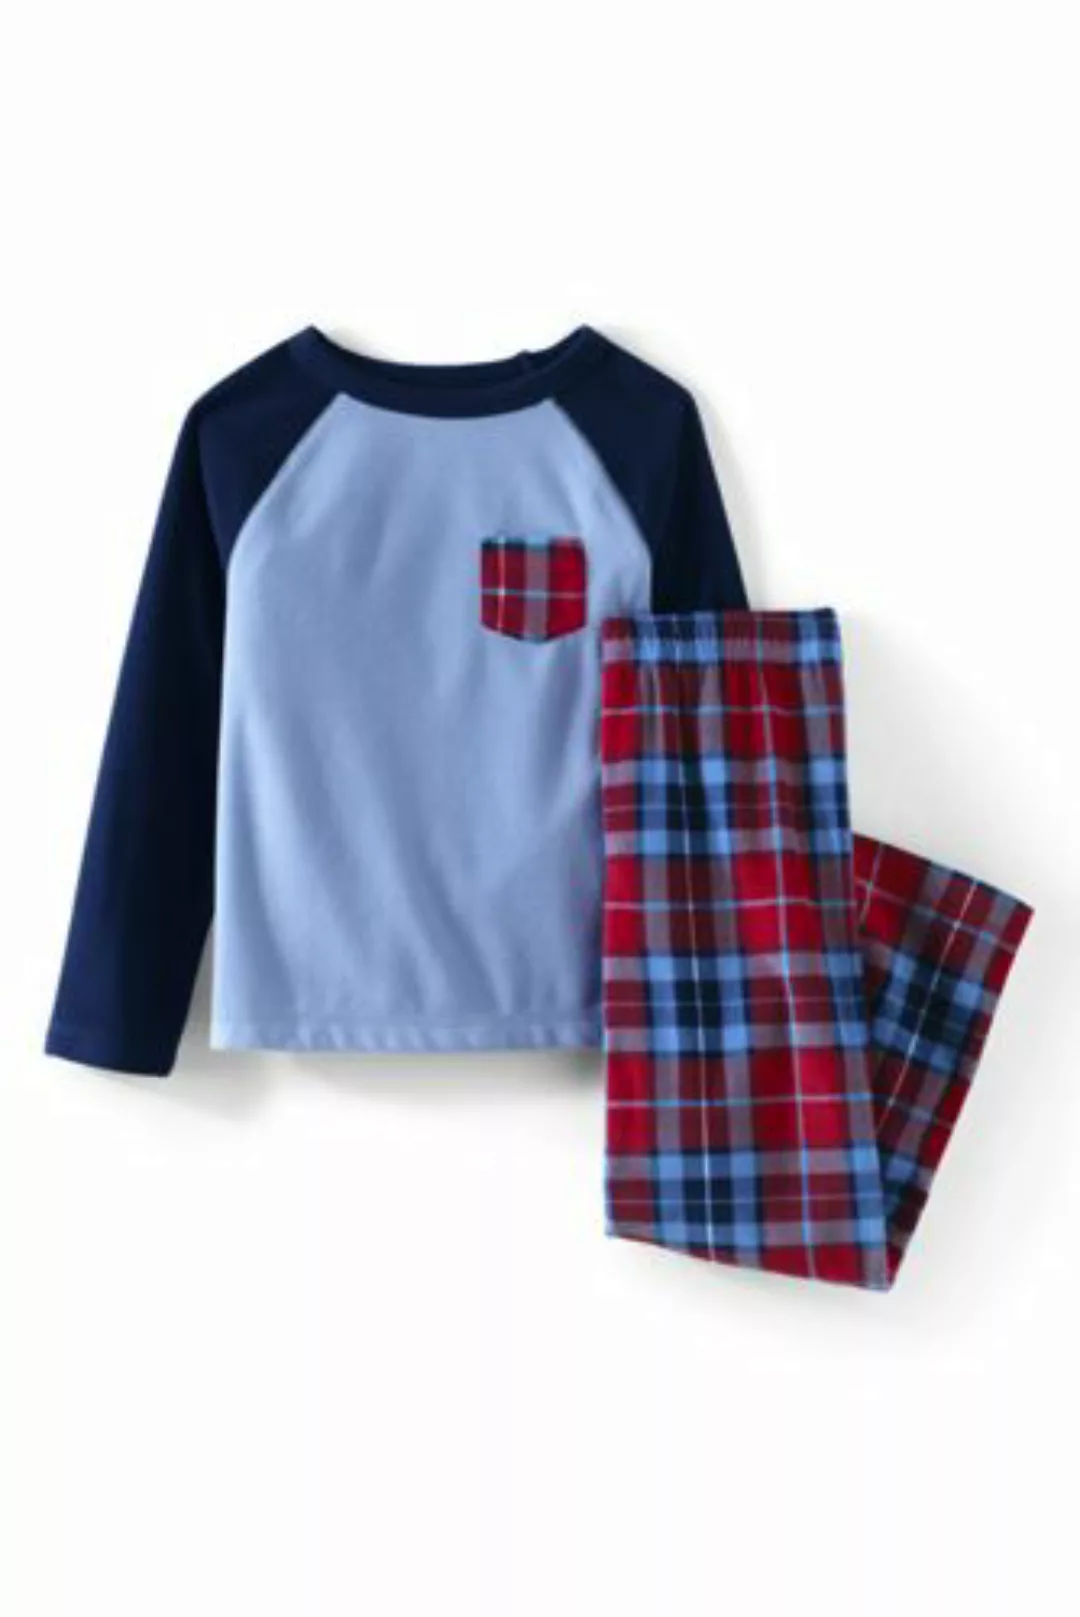 Pyjama-Set aus Fleece, Größe: 134-140, Rot, by Lands' End, Satt Rot Multi K günstig online kaufen